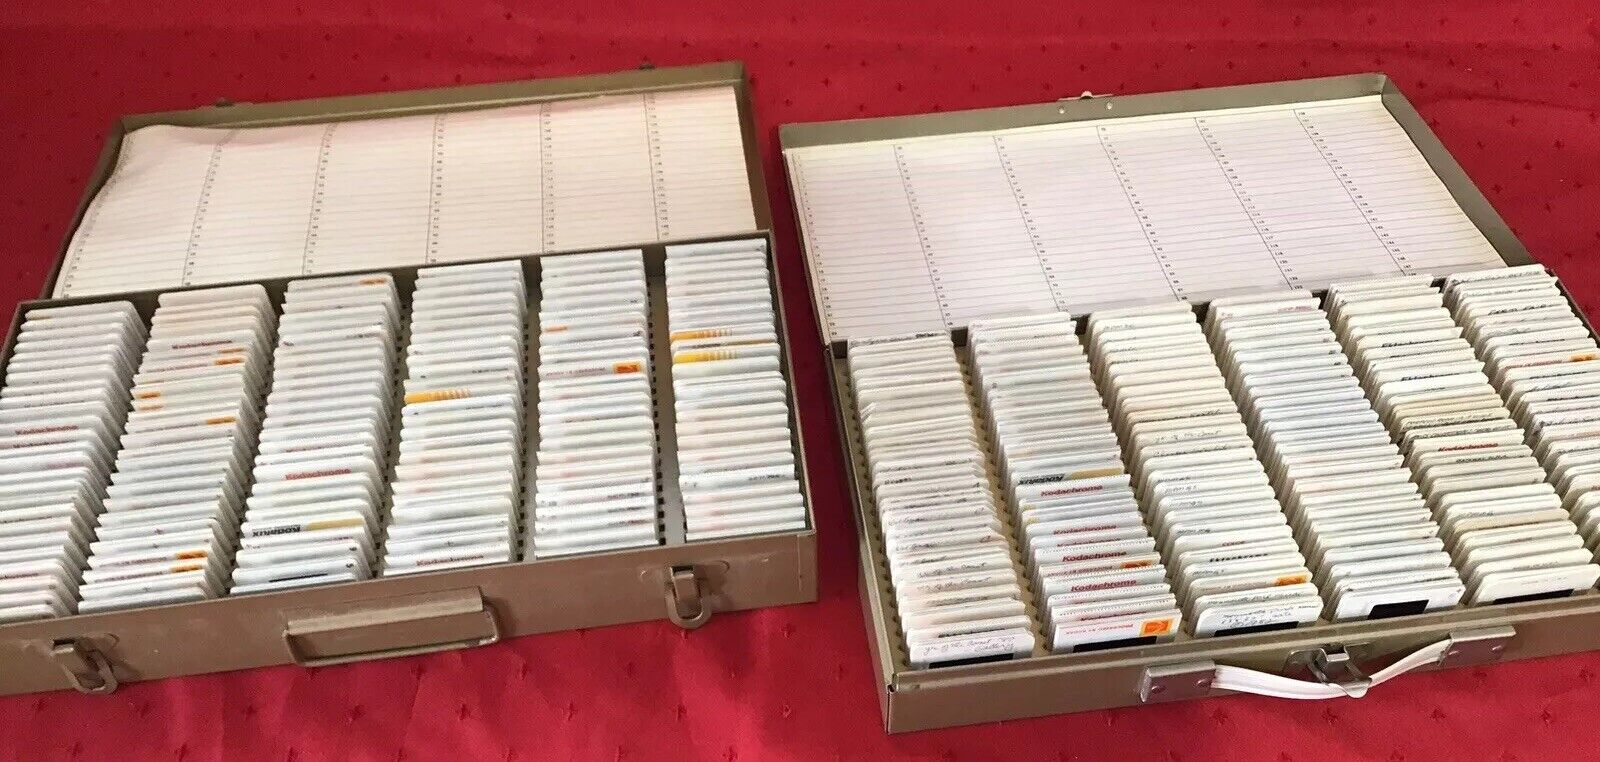 35mm Slides Lot Of 600 Slides In 2 Metal Slide Cases